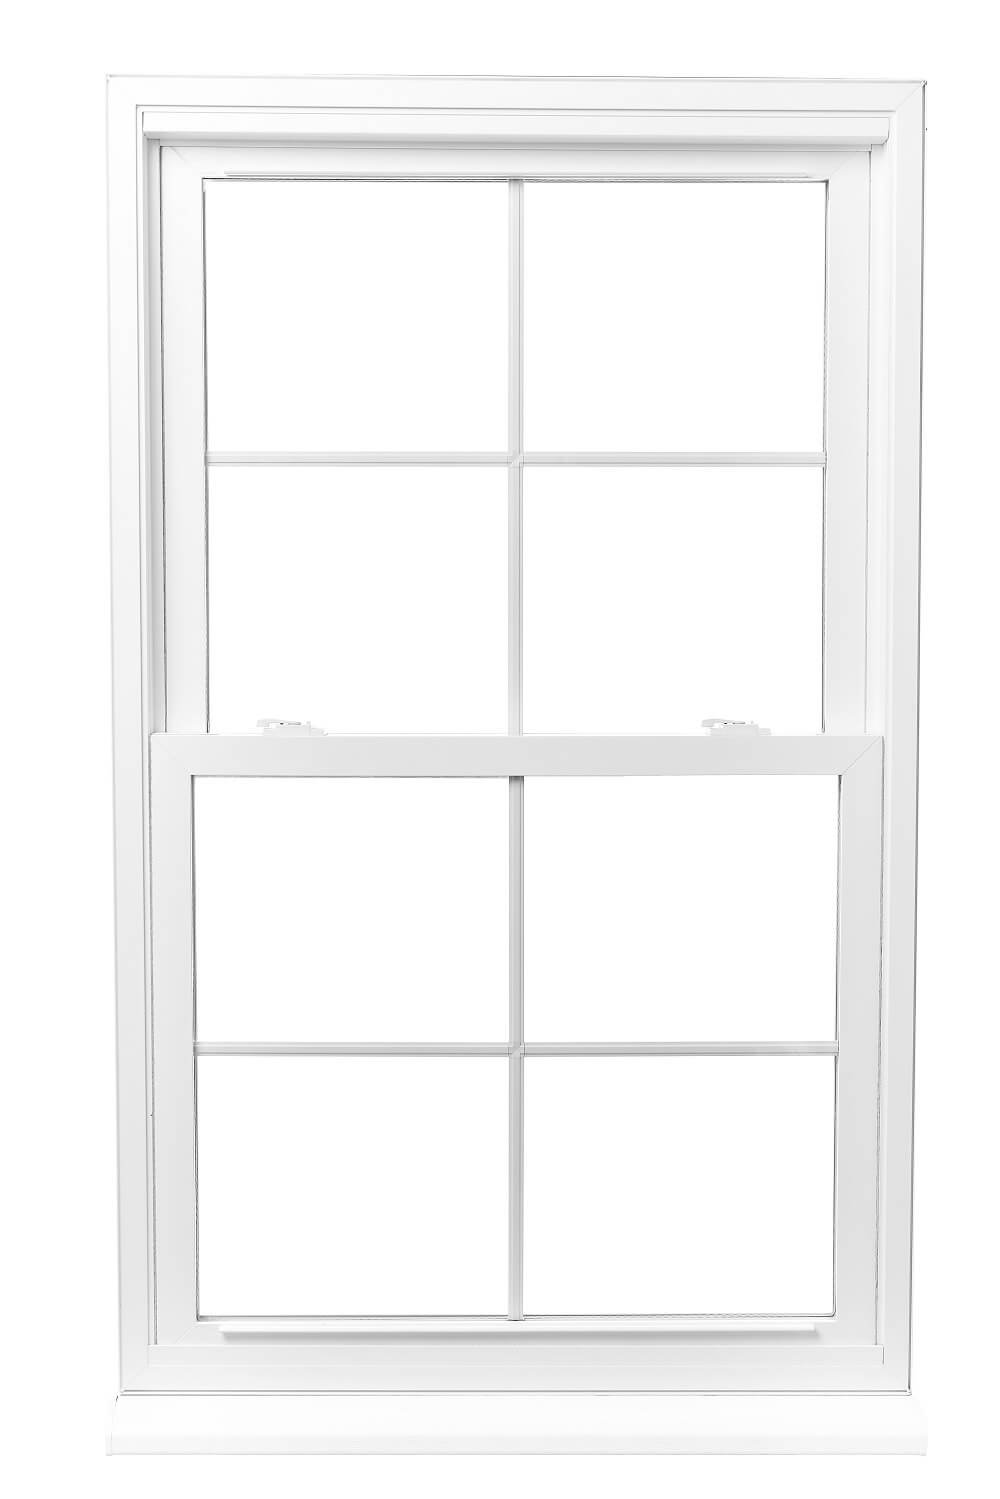 Вертикальный слайдер. Окна слайдеры вертикальные. Пластиковые окна слайдеры. Английские окна вертикально. Окна слайдеры горизонтальные.